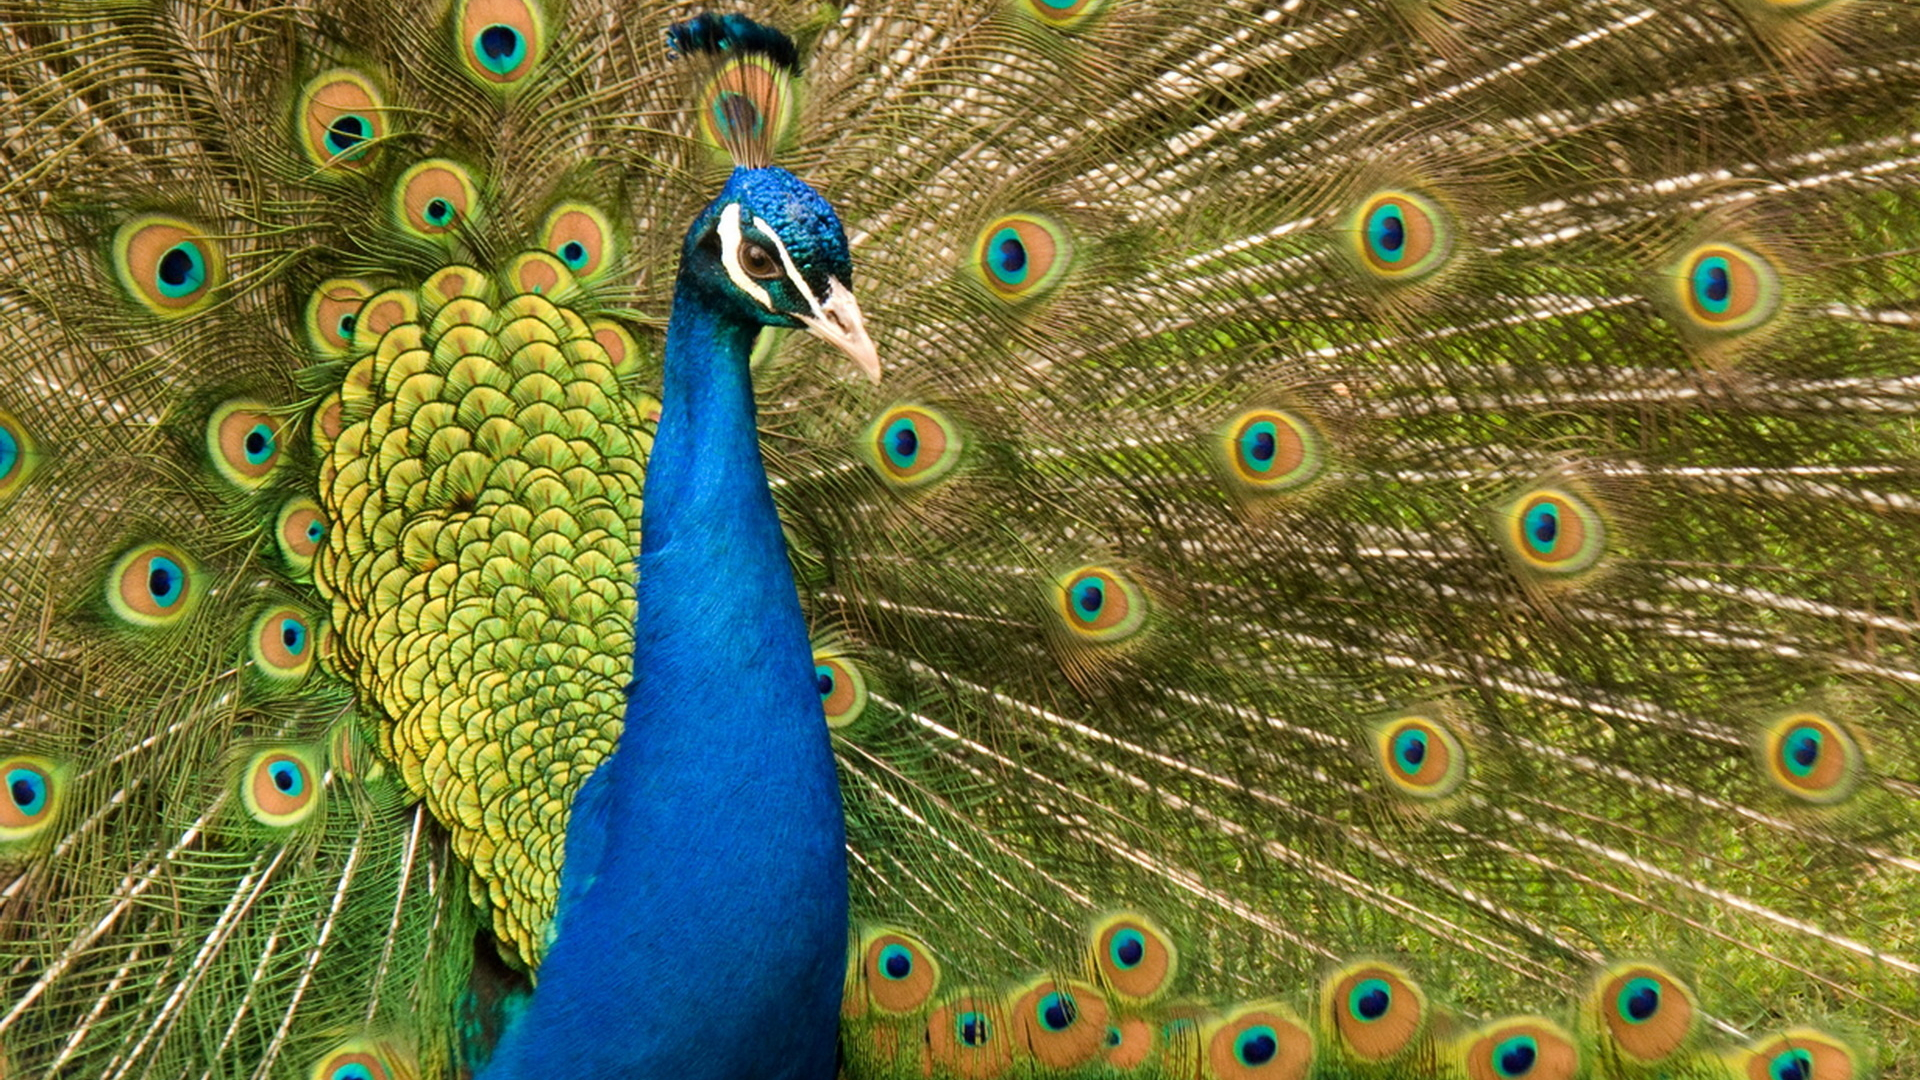 تصویر استوک زیبا از طاووس با دم سبز ابی  پرنگ منحصر به فرد